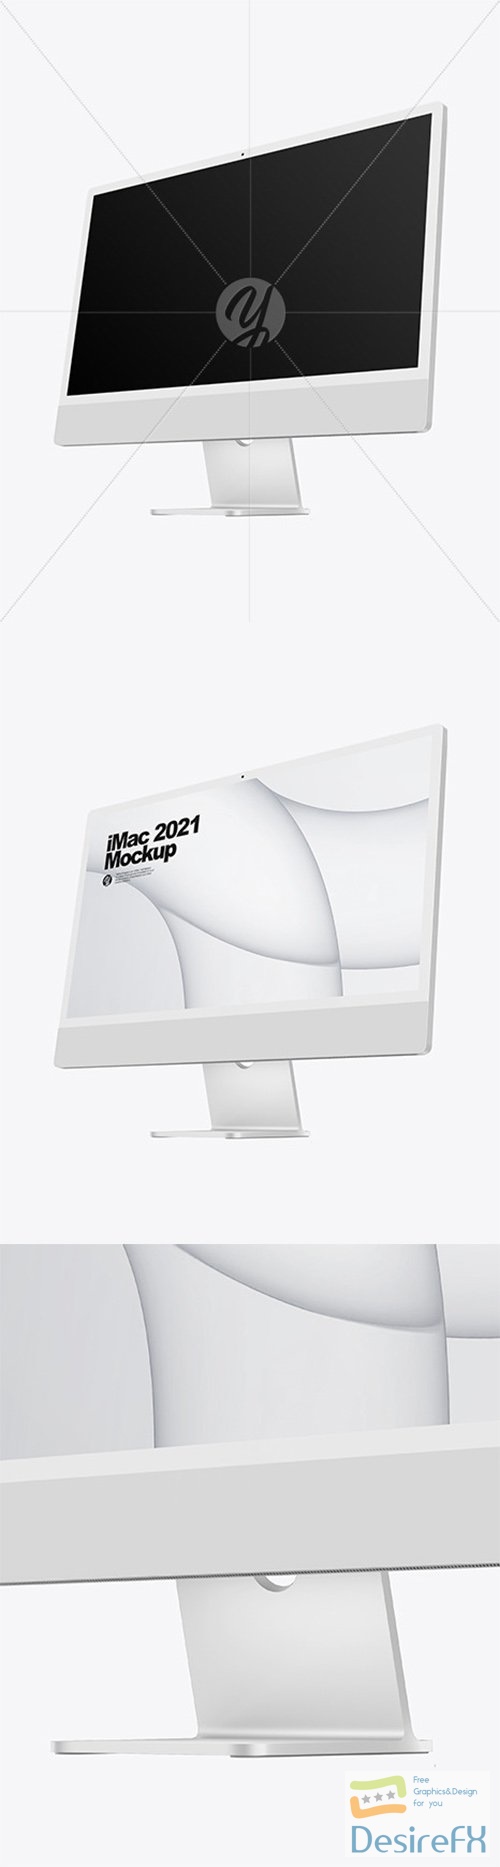 Silver iMac 24 Mockup 82255 TIF